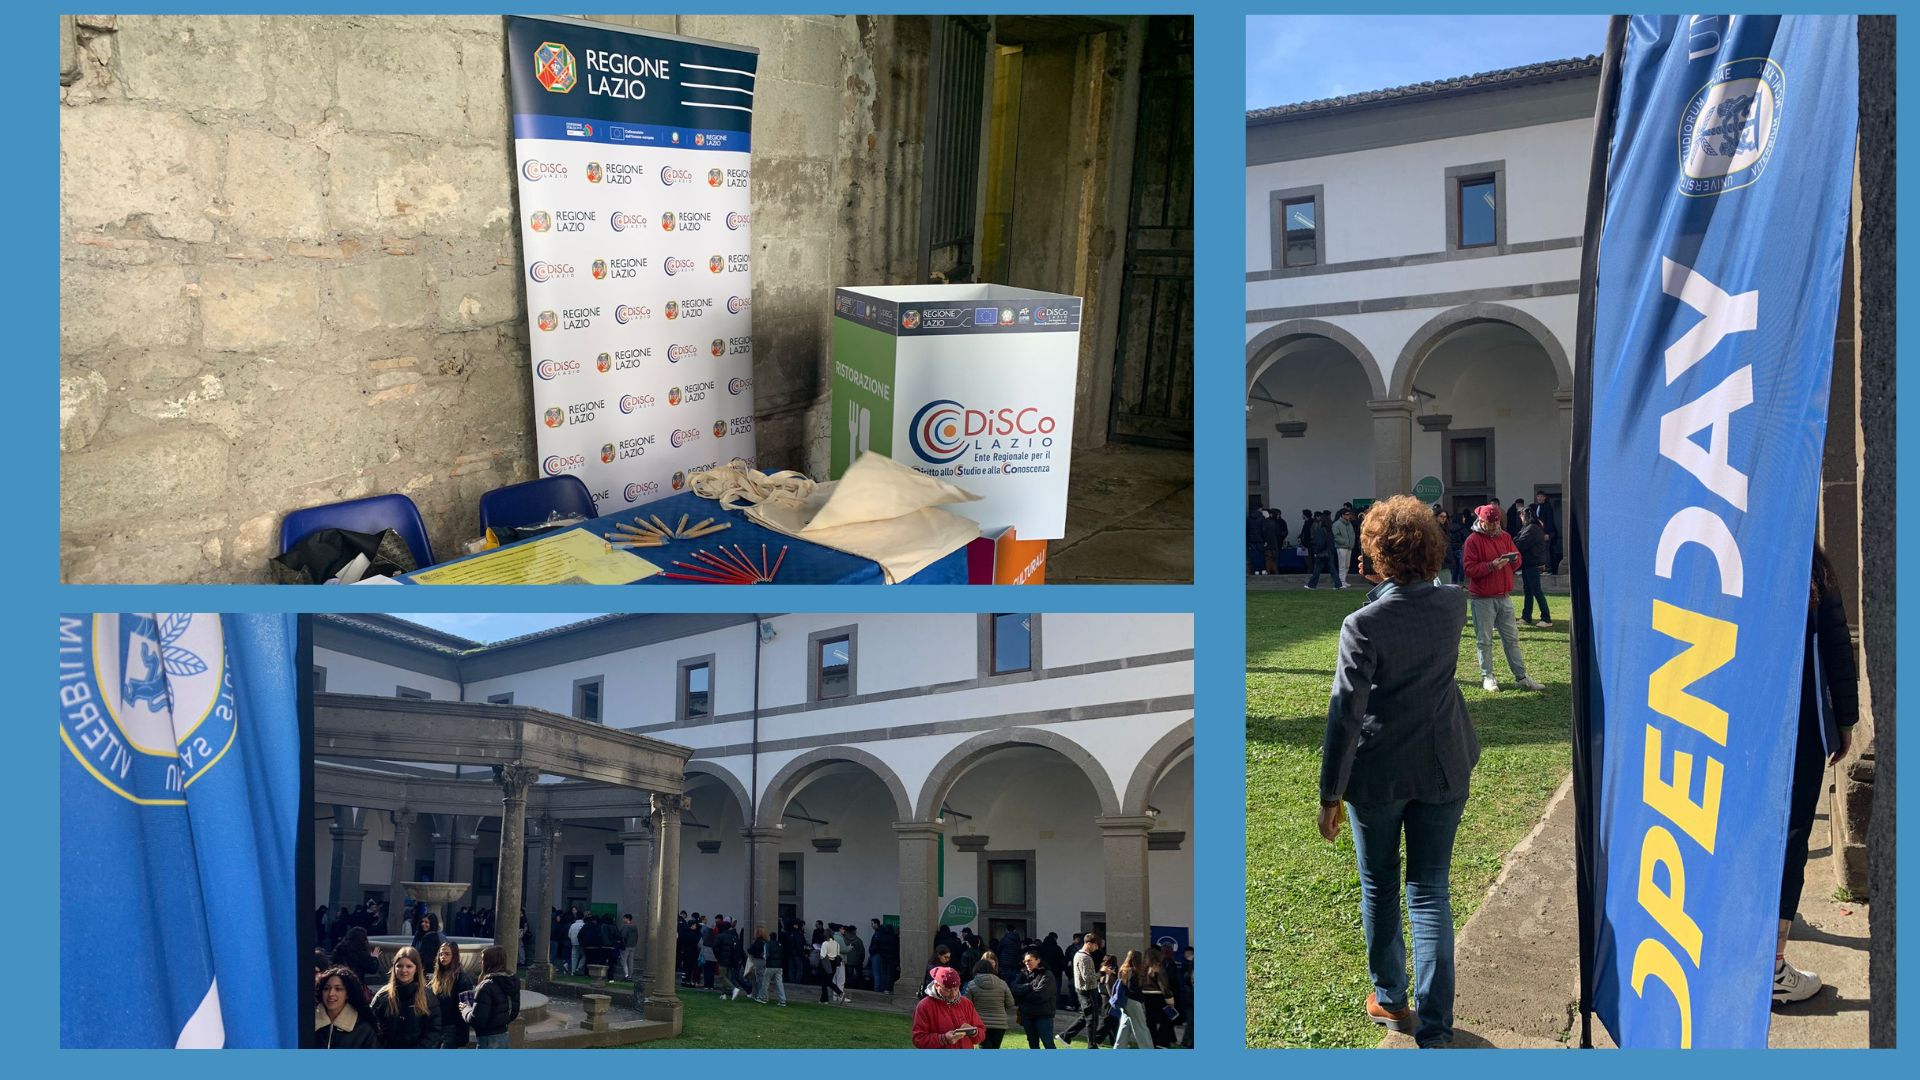 DiSCo e Porta Futuro Lazio oggi all'Open Day dell'Università della Tuscia di Viterbo, evento di orientamento per gli studenti delle scuole superiori, per dare informazioni sui bandi, le opportunità e i servizi offerti dall'Ente.